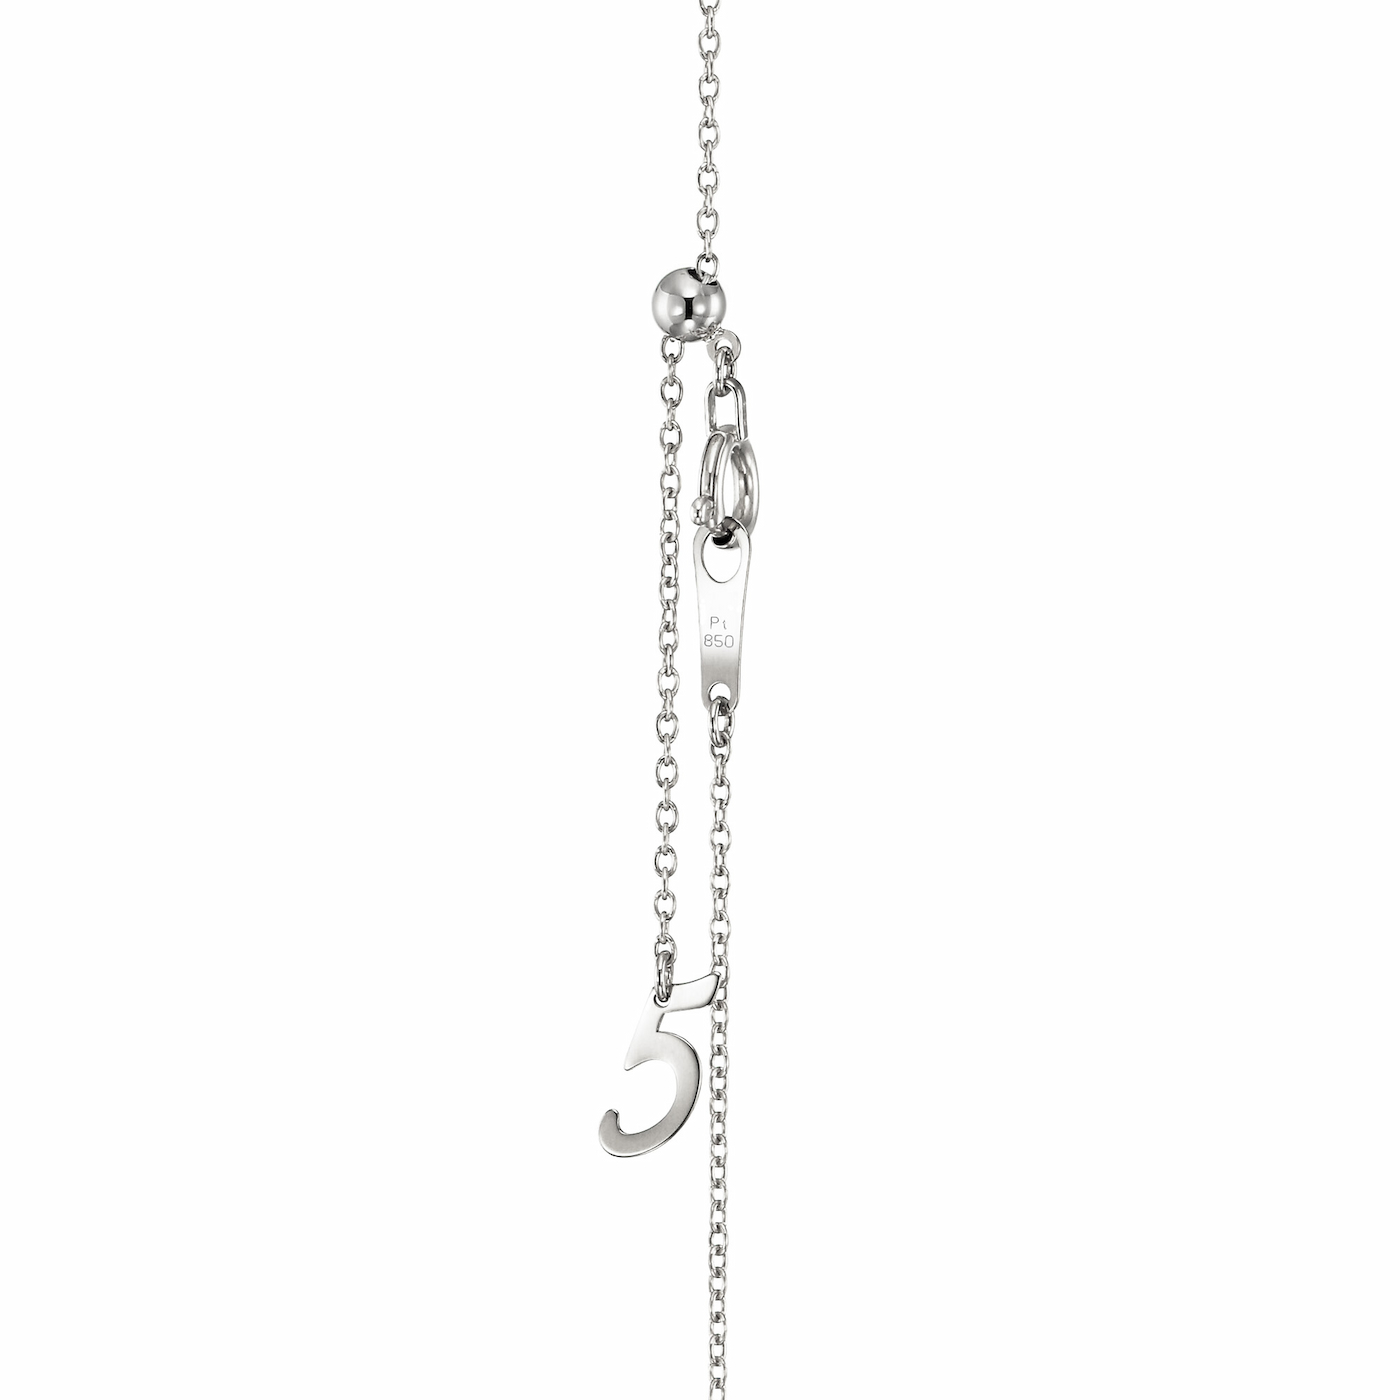 ラボグロウンダイヤモンド専門店『september5』の一粒爪どめダイヤプラチナネックレスのボールチェーンスライドのエンドパーツ。